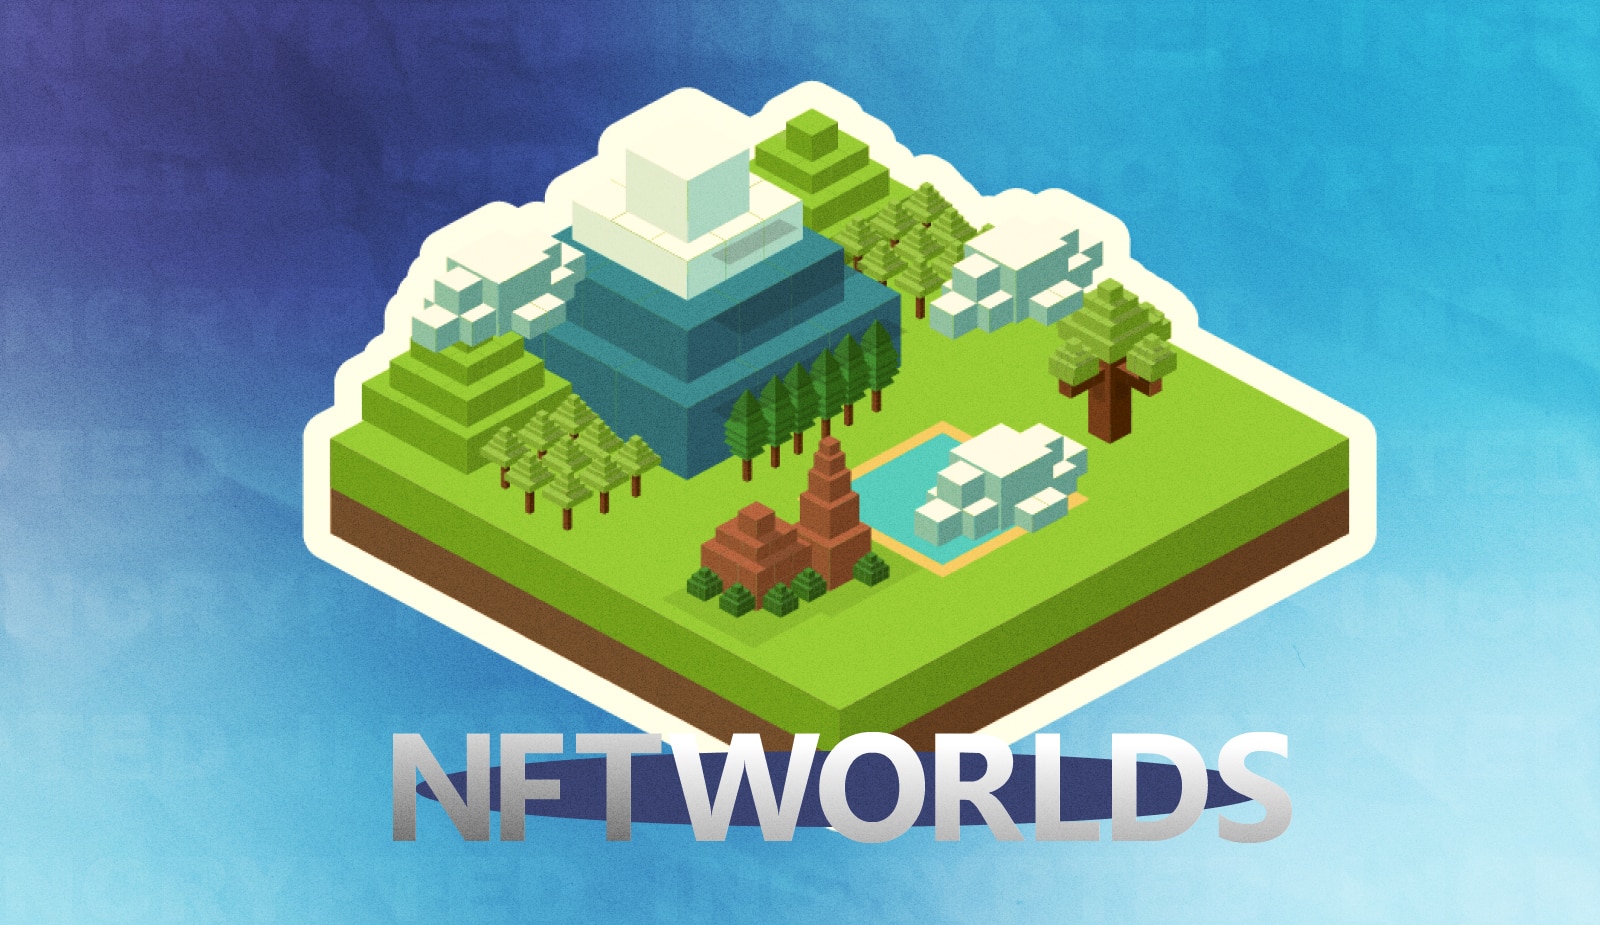 NFT Worlds создаст свой Minecraft с токенами и маркетплейсом. Заглавный коллаж новости.